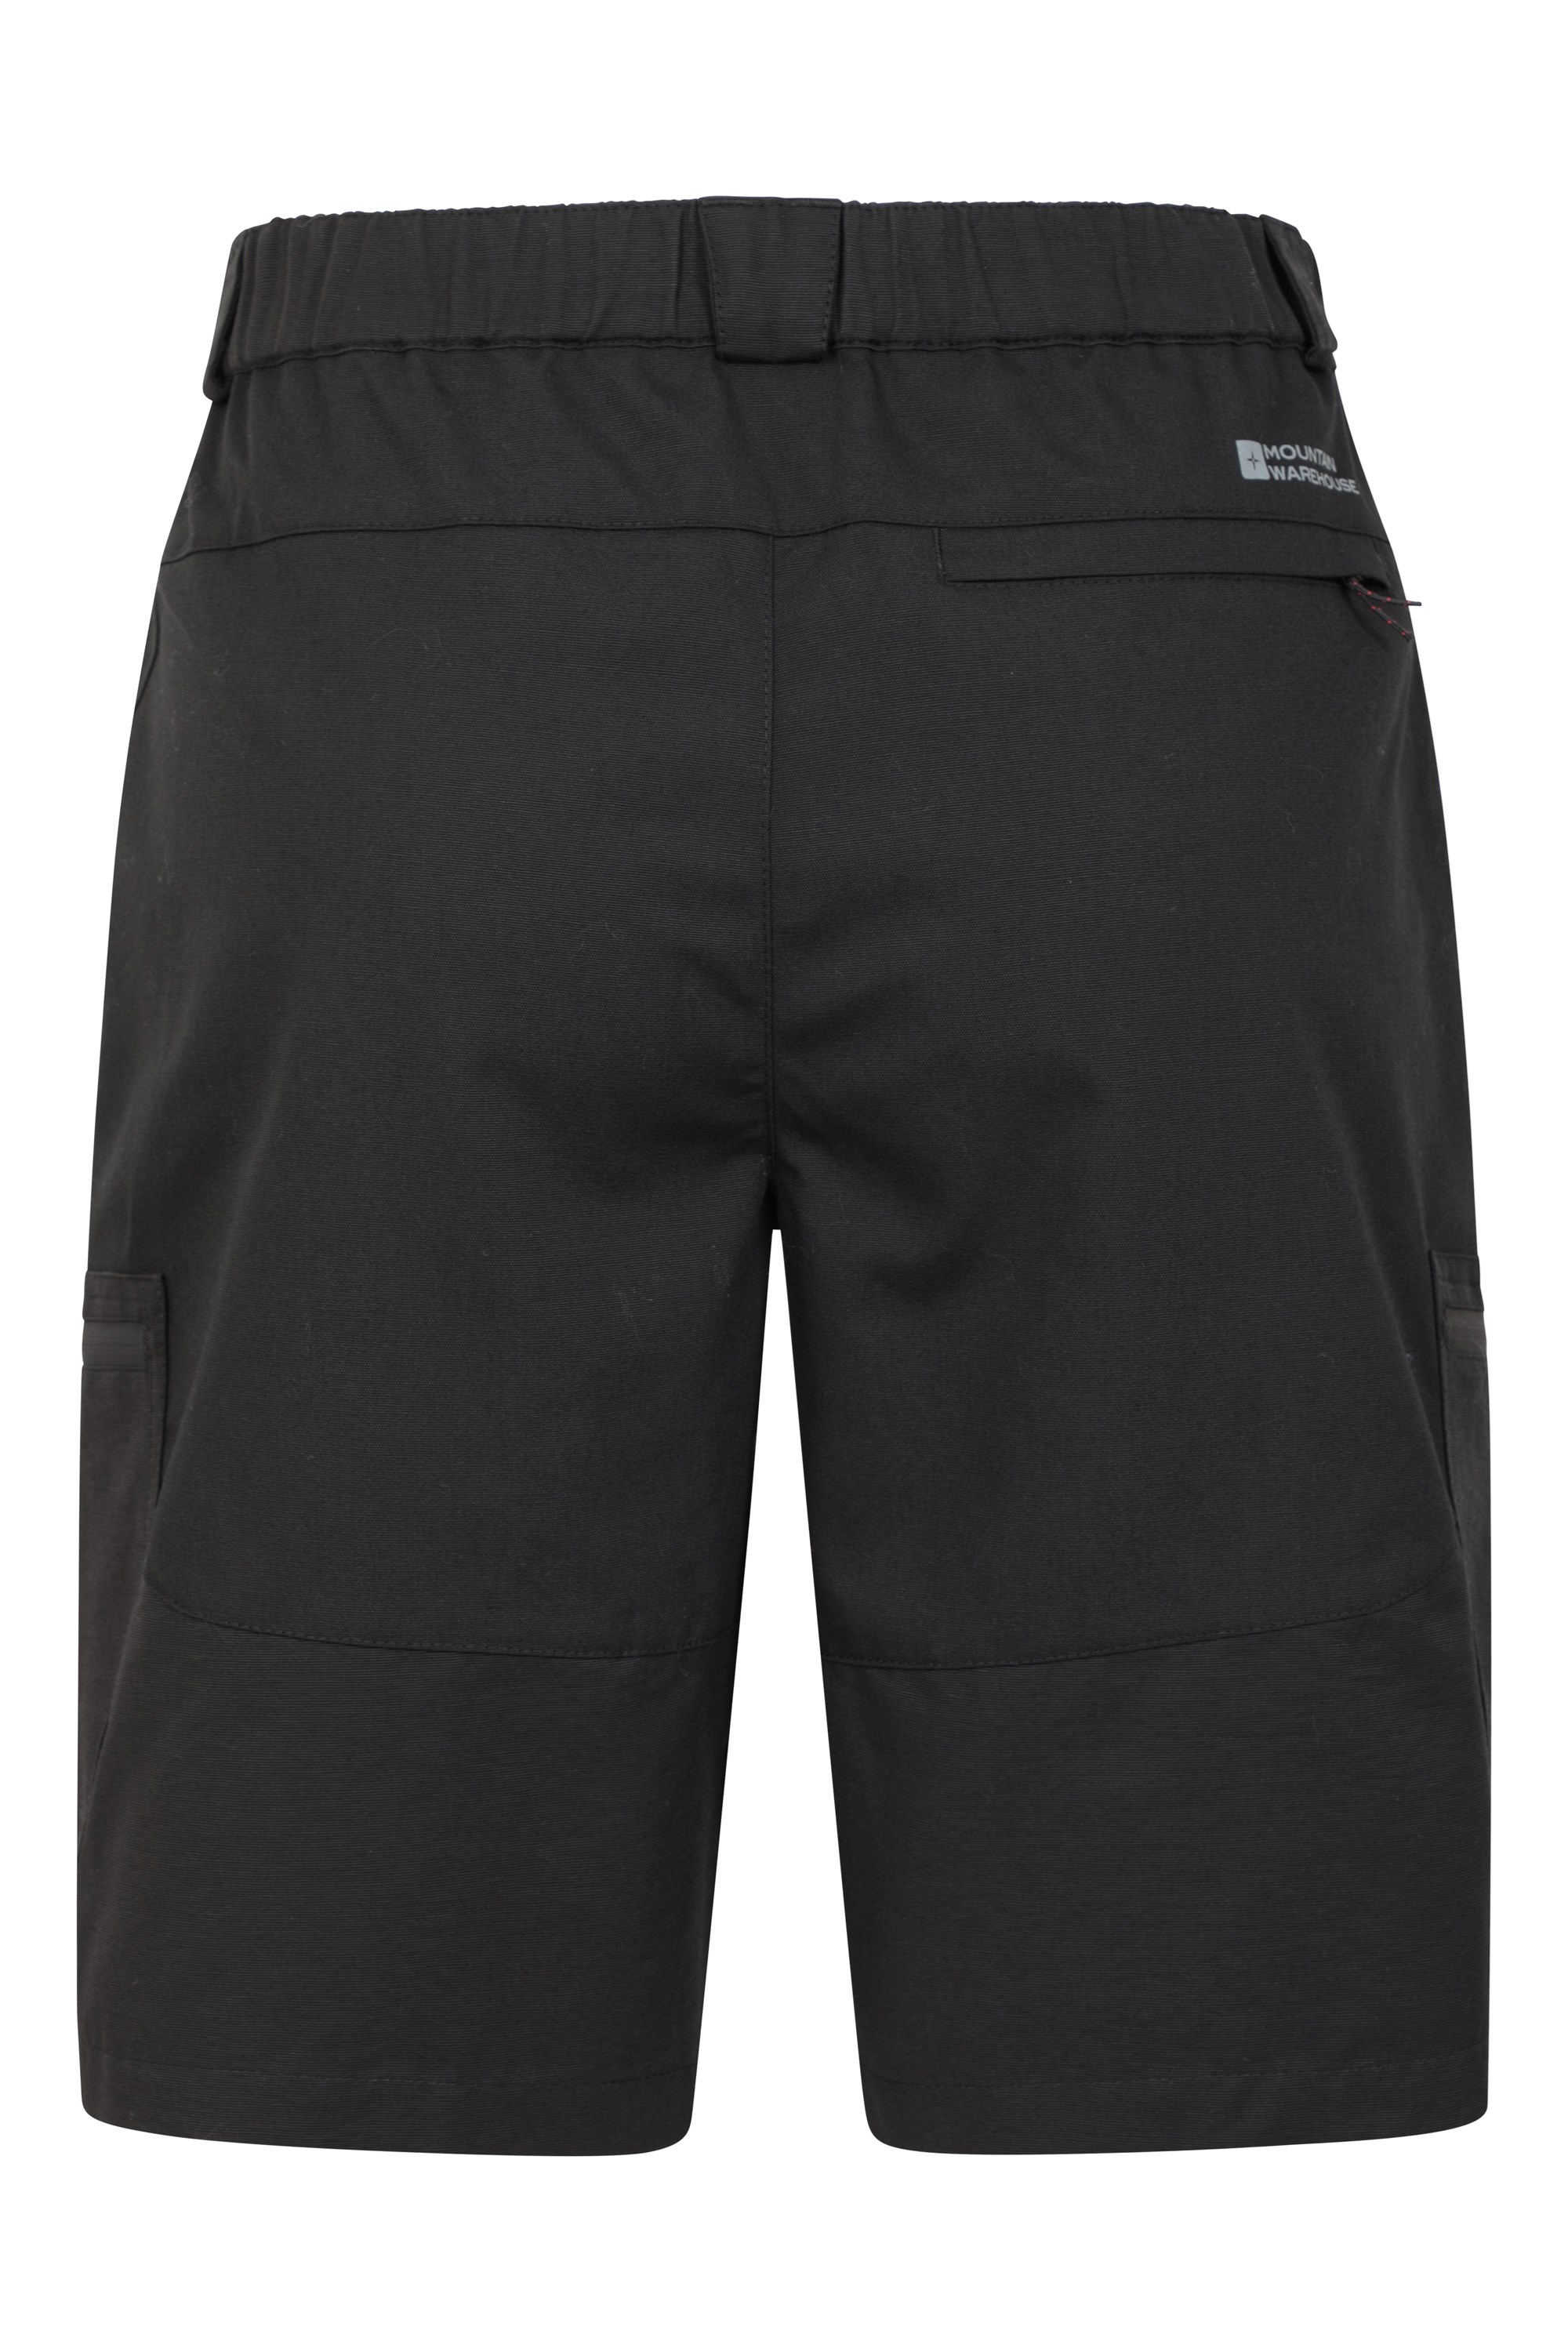 Mountain Warehouse Men's Mountain Warehouse Khaki Cotton Walking Shorts W 38" 